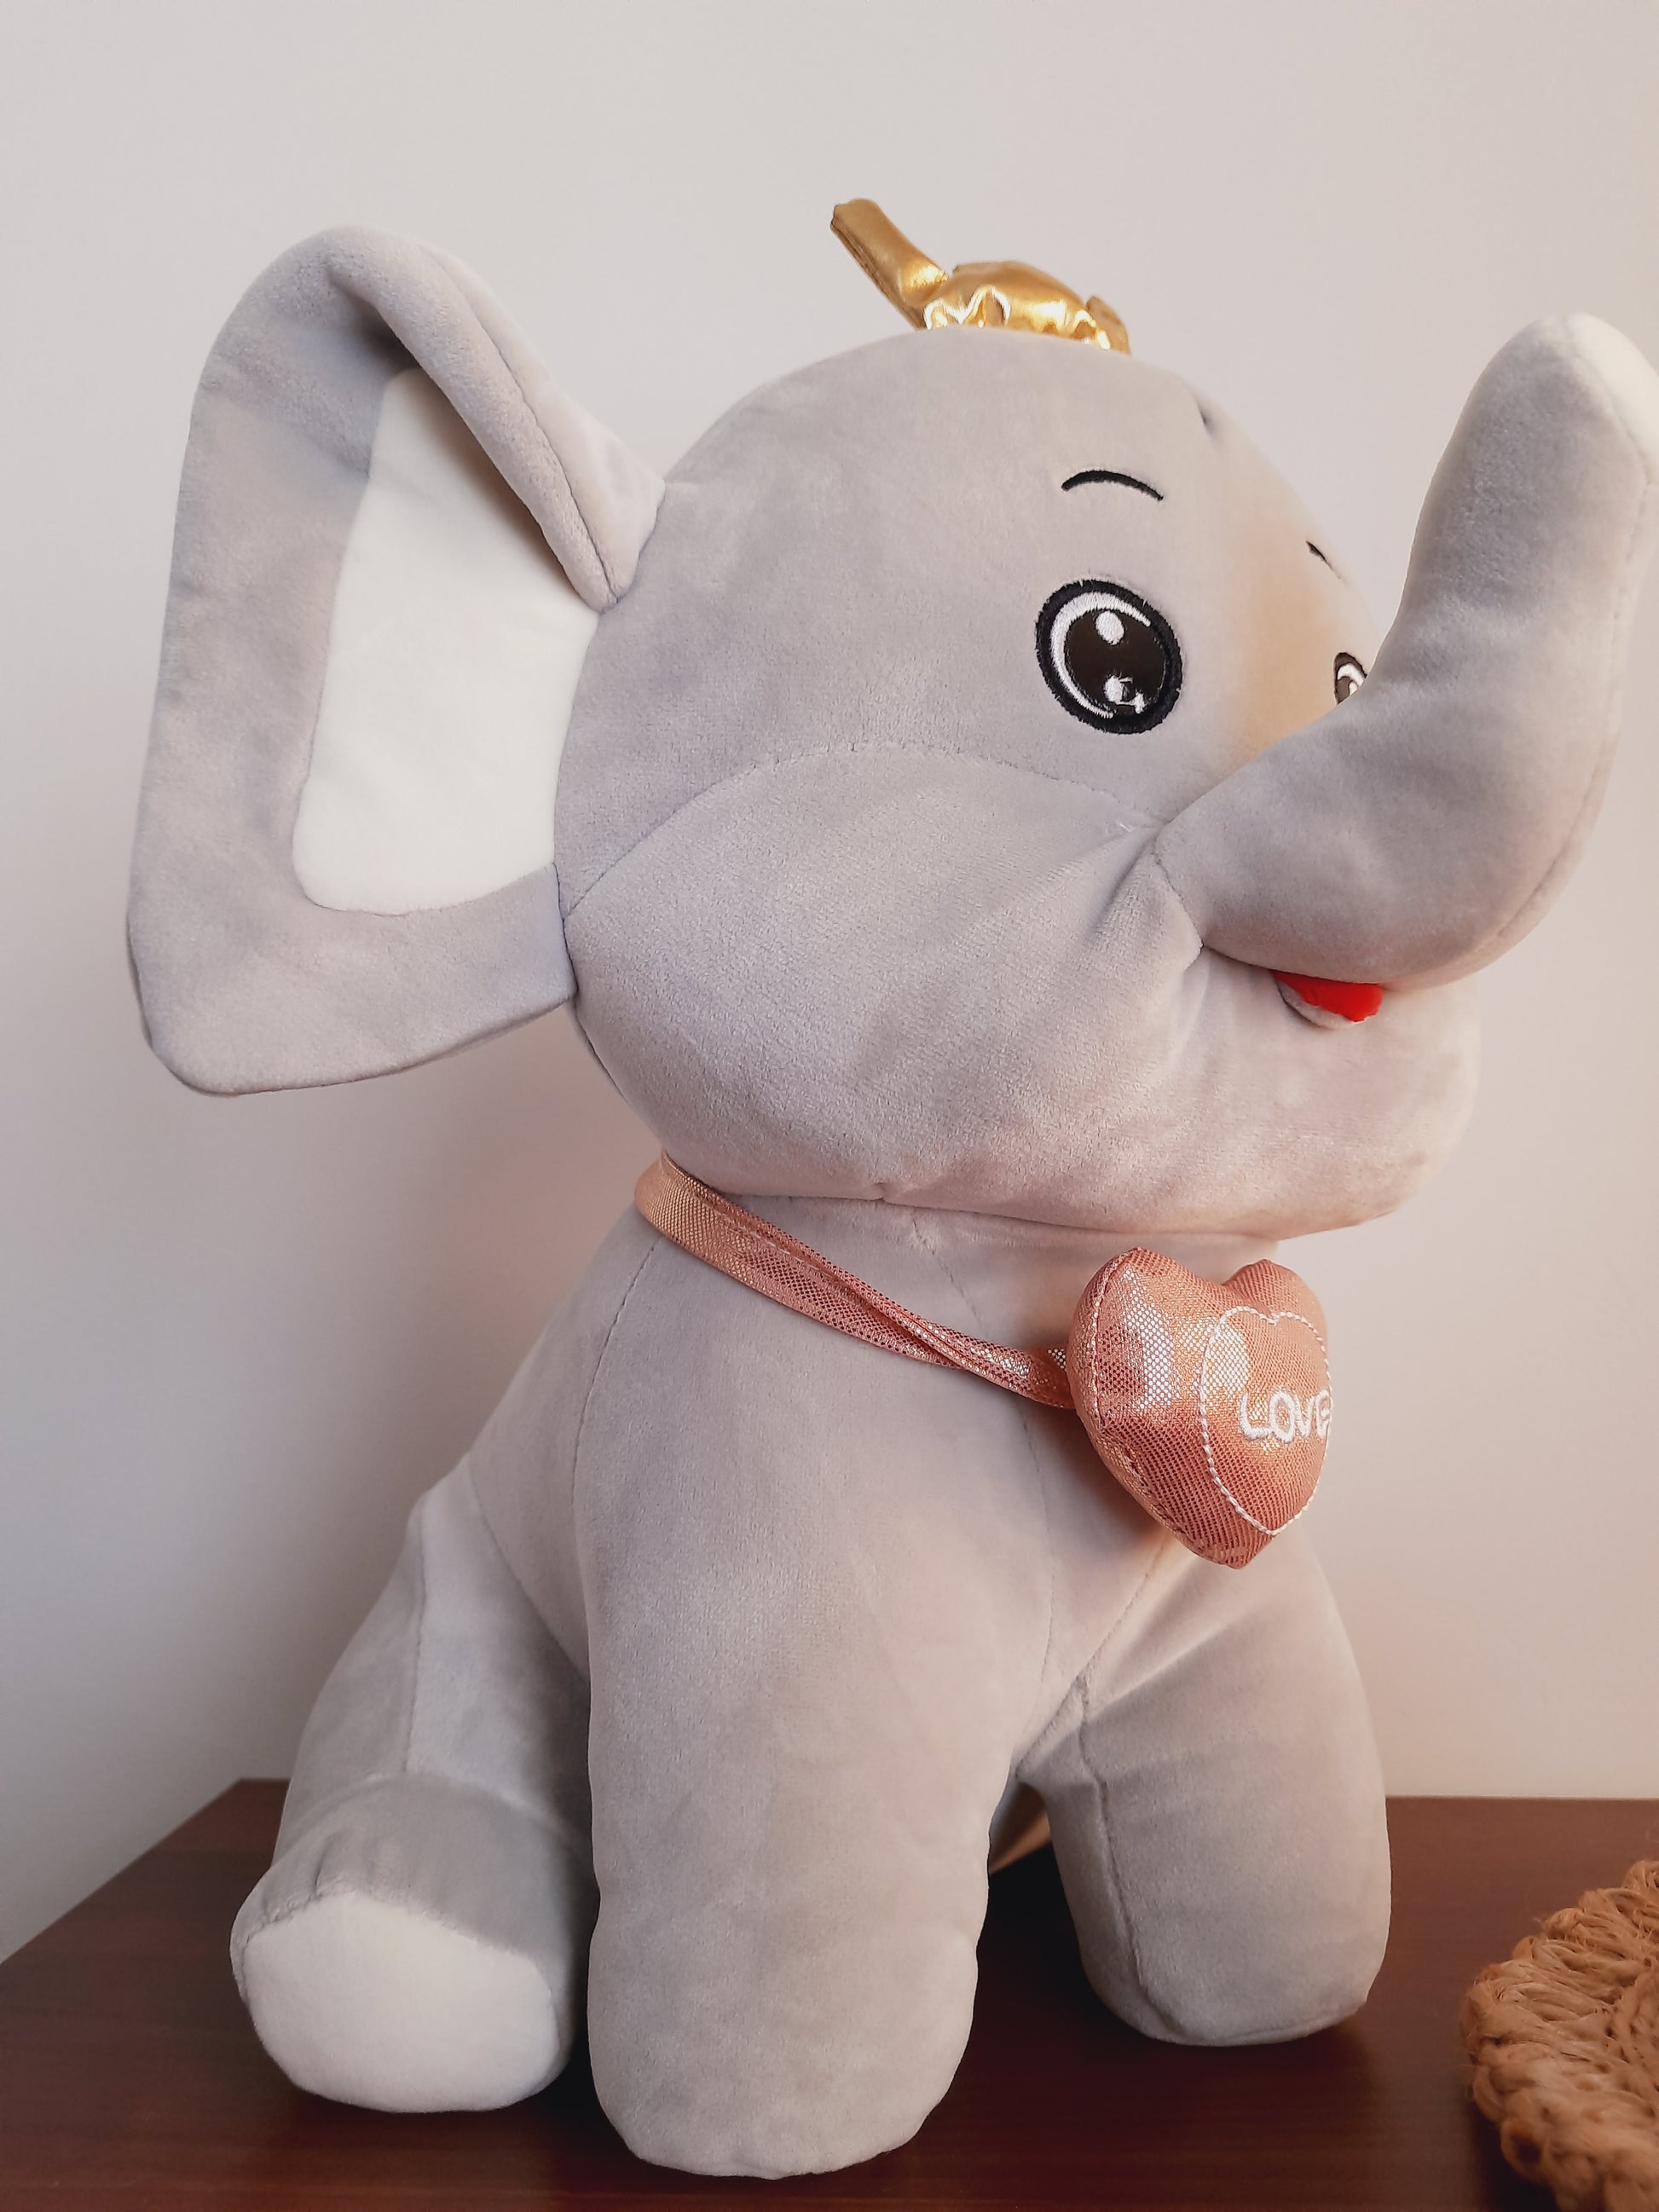 Crown Elephant soft toy Agiftshop